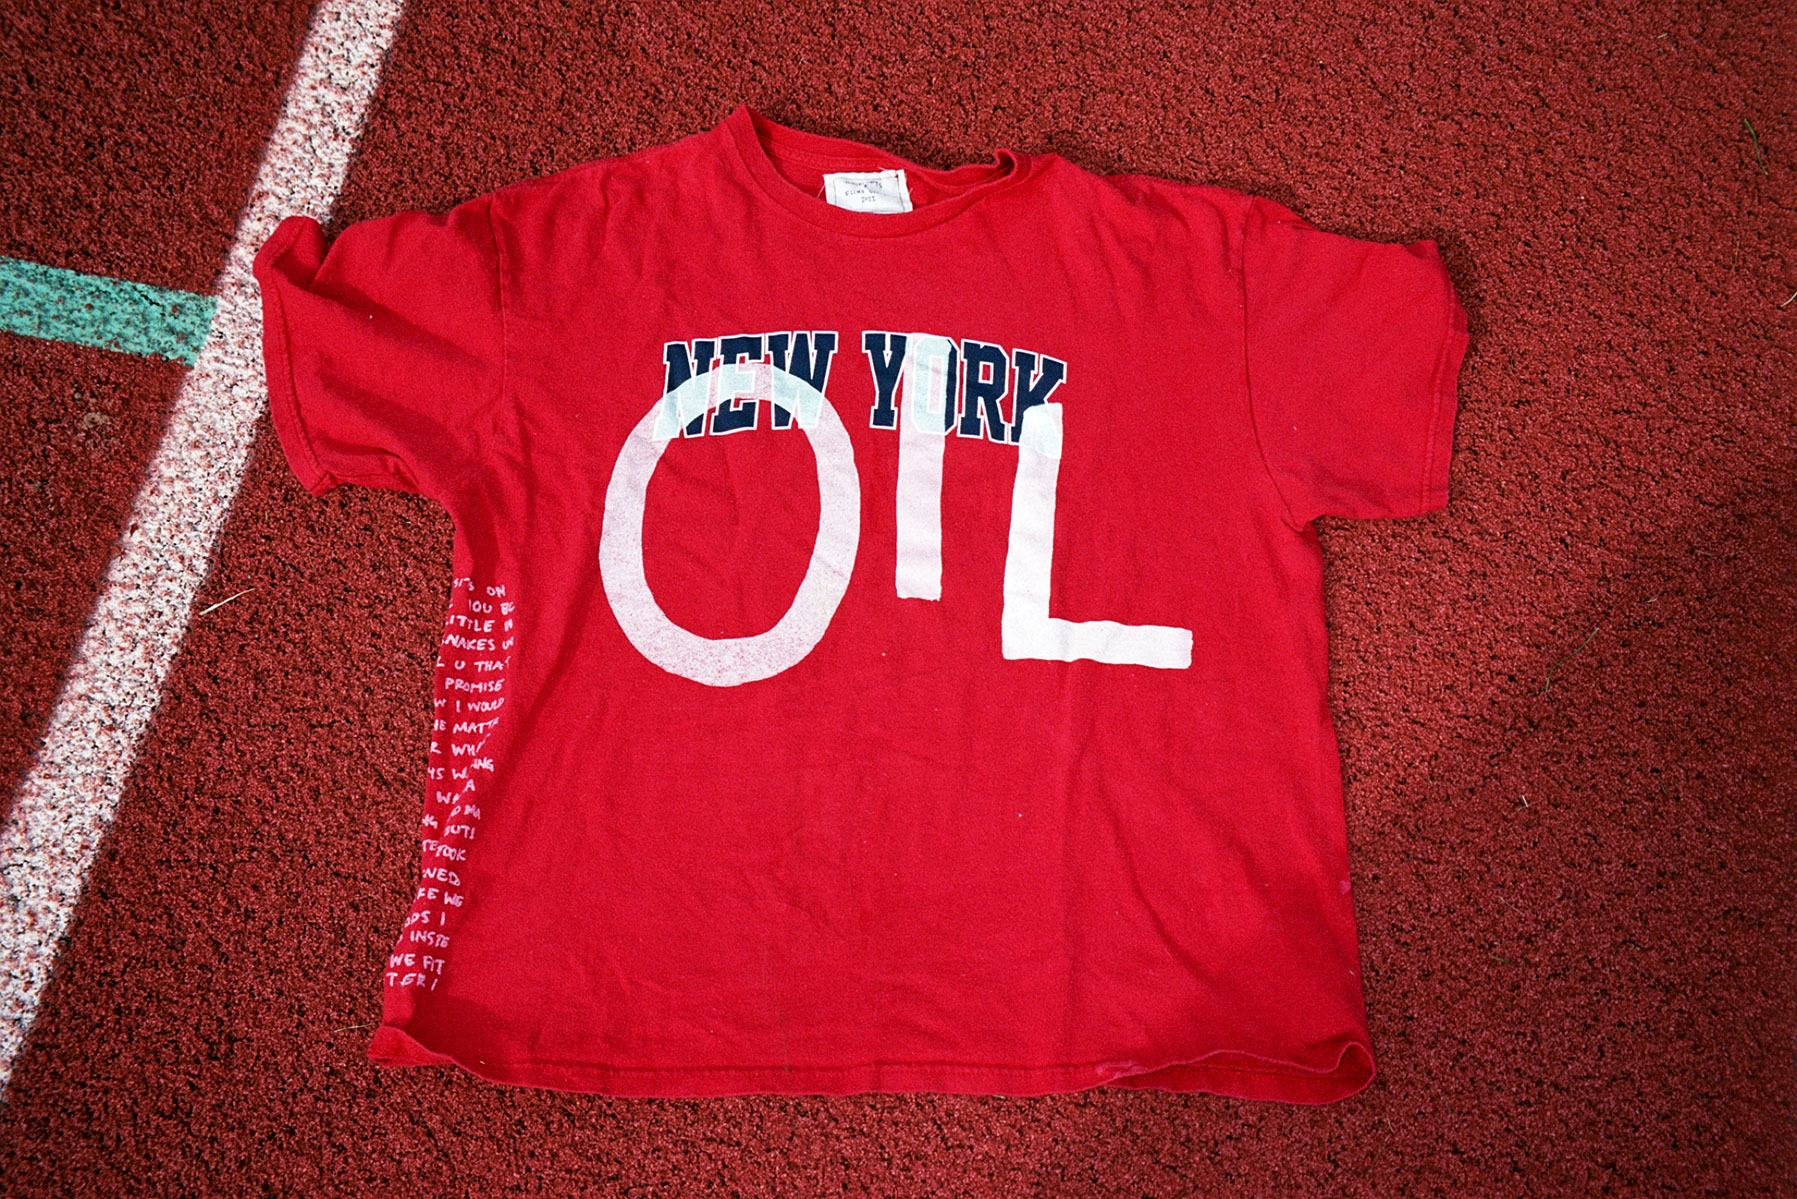 1-of-1 new york oil shirt